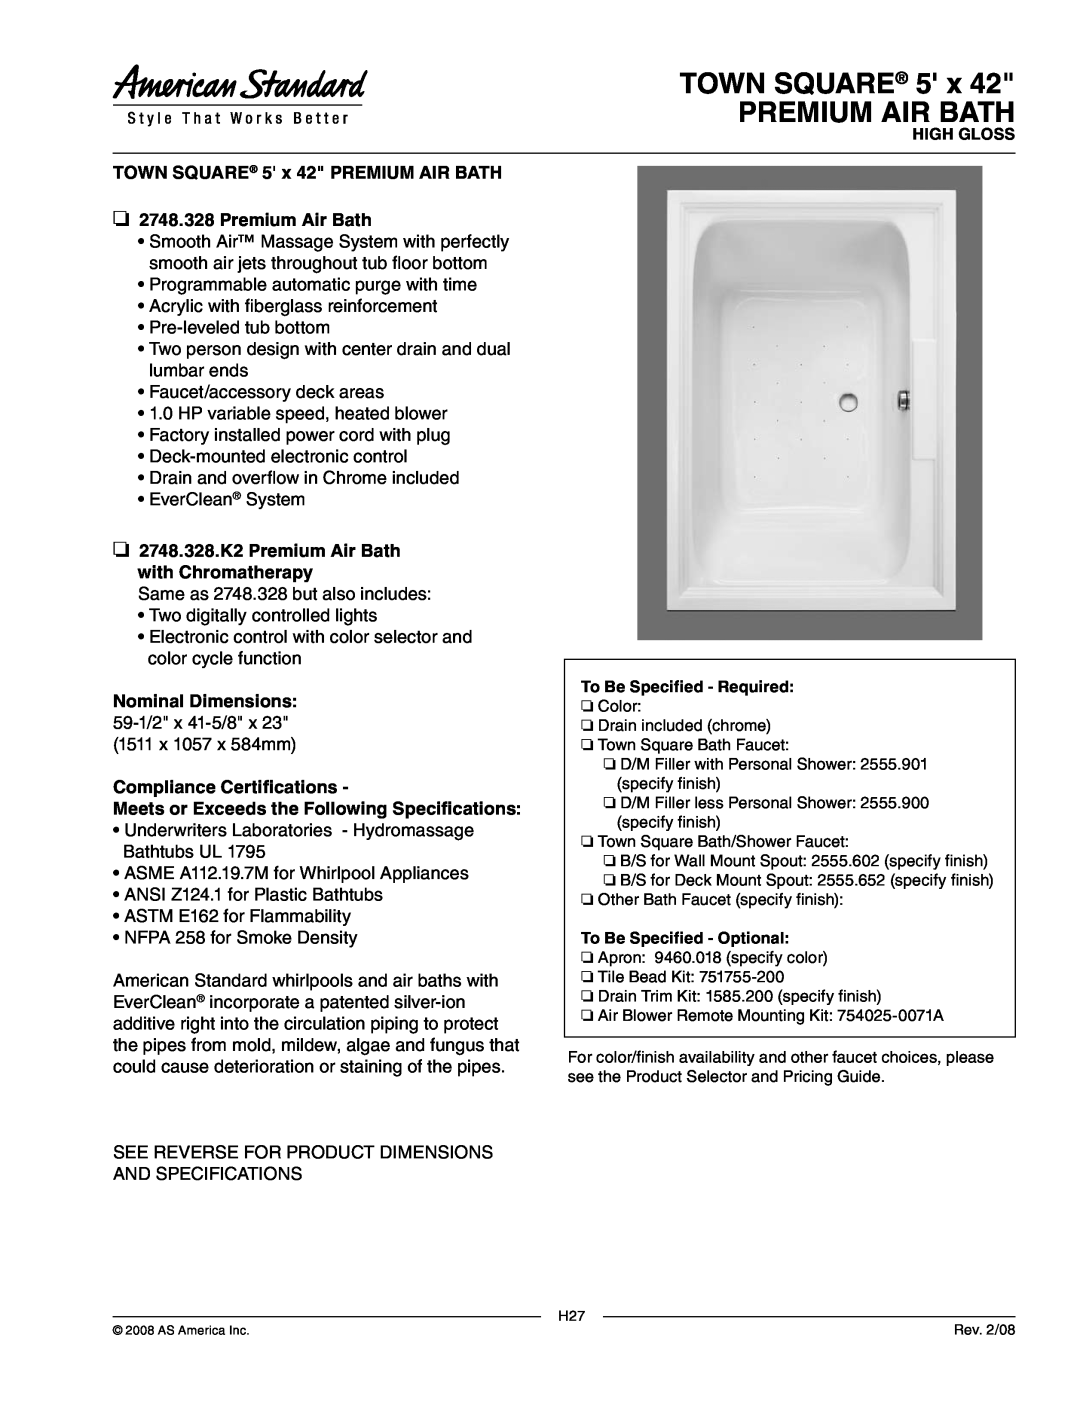 American Standard dimensions TOWN SQUARE 5 x PREMIUM AIR BATH, 2748.328.K2 Premium Air Bath with Chromatherapy 